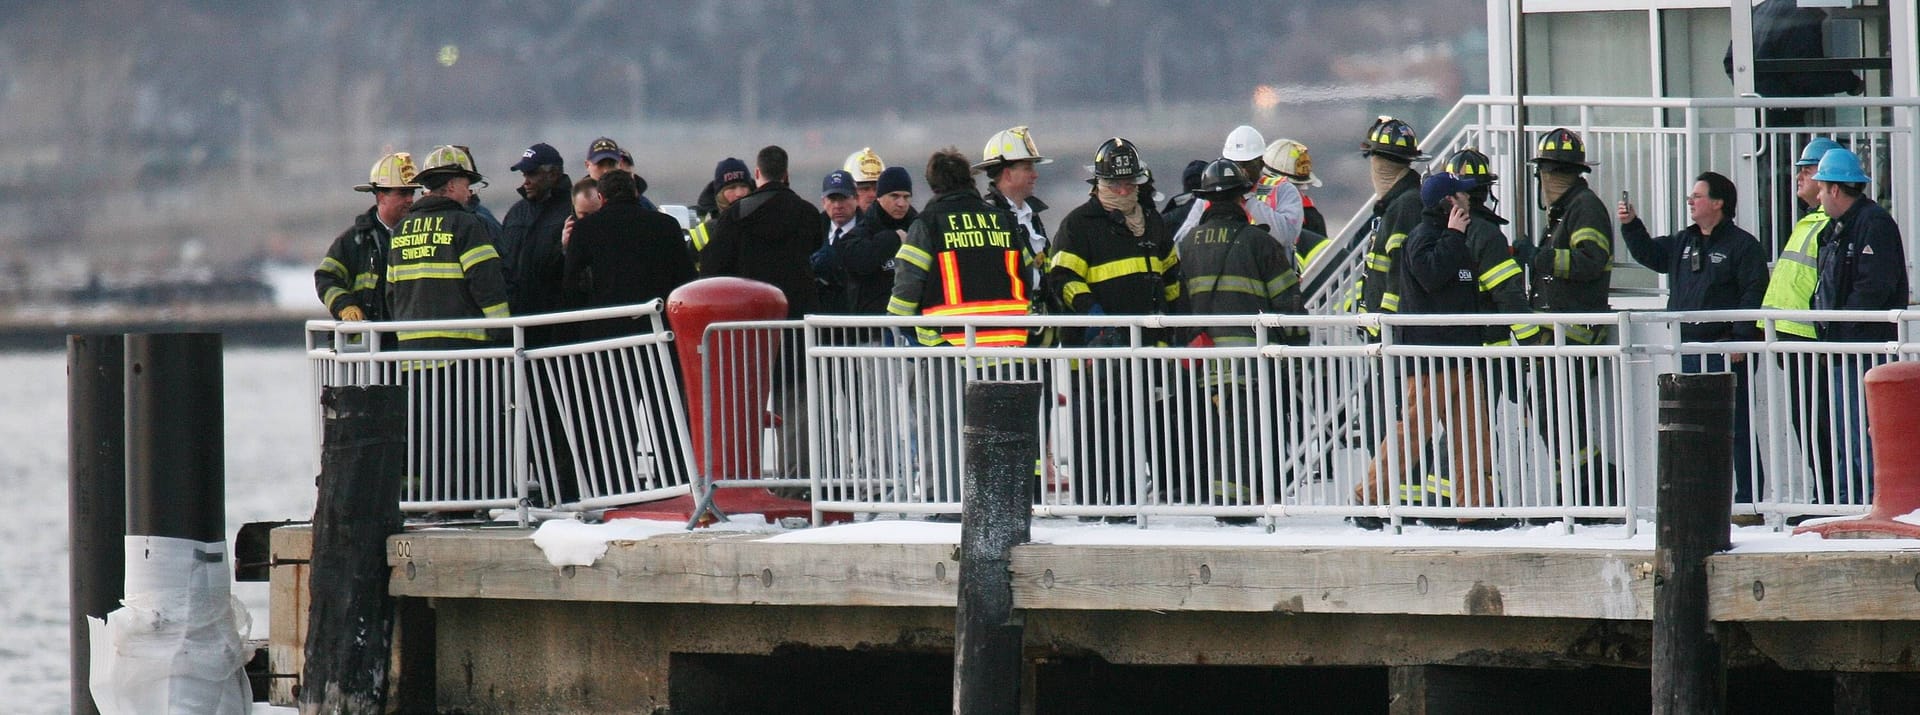 Rettungskräfte am Hudson River, nachdem ein Flugzeug im Wasser notgelandet ist.